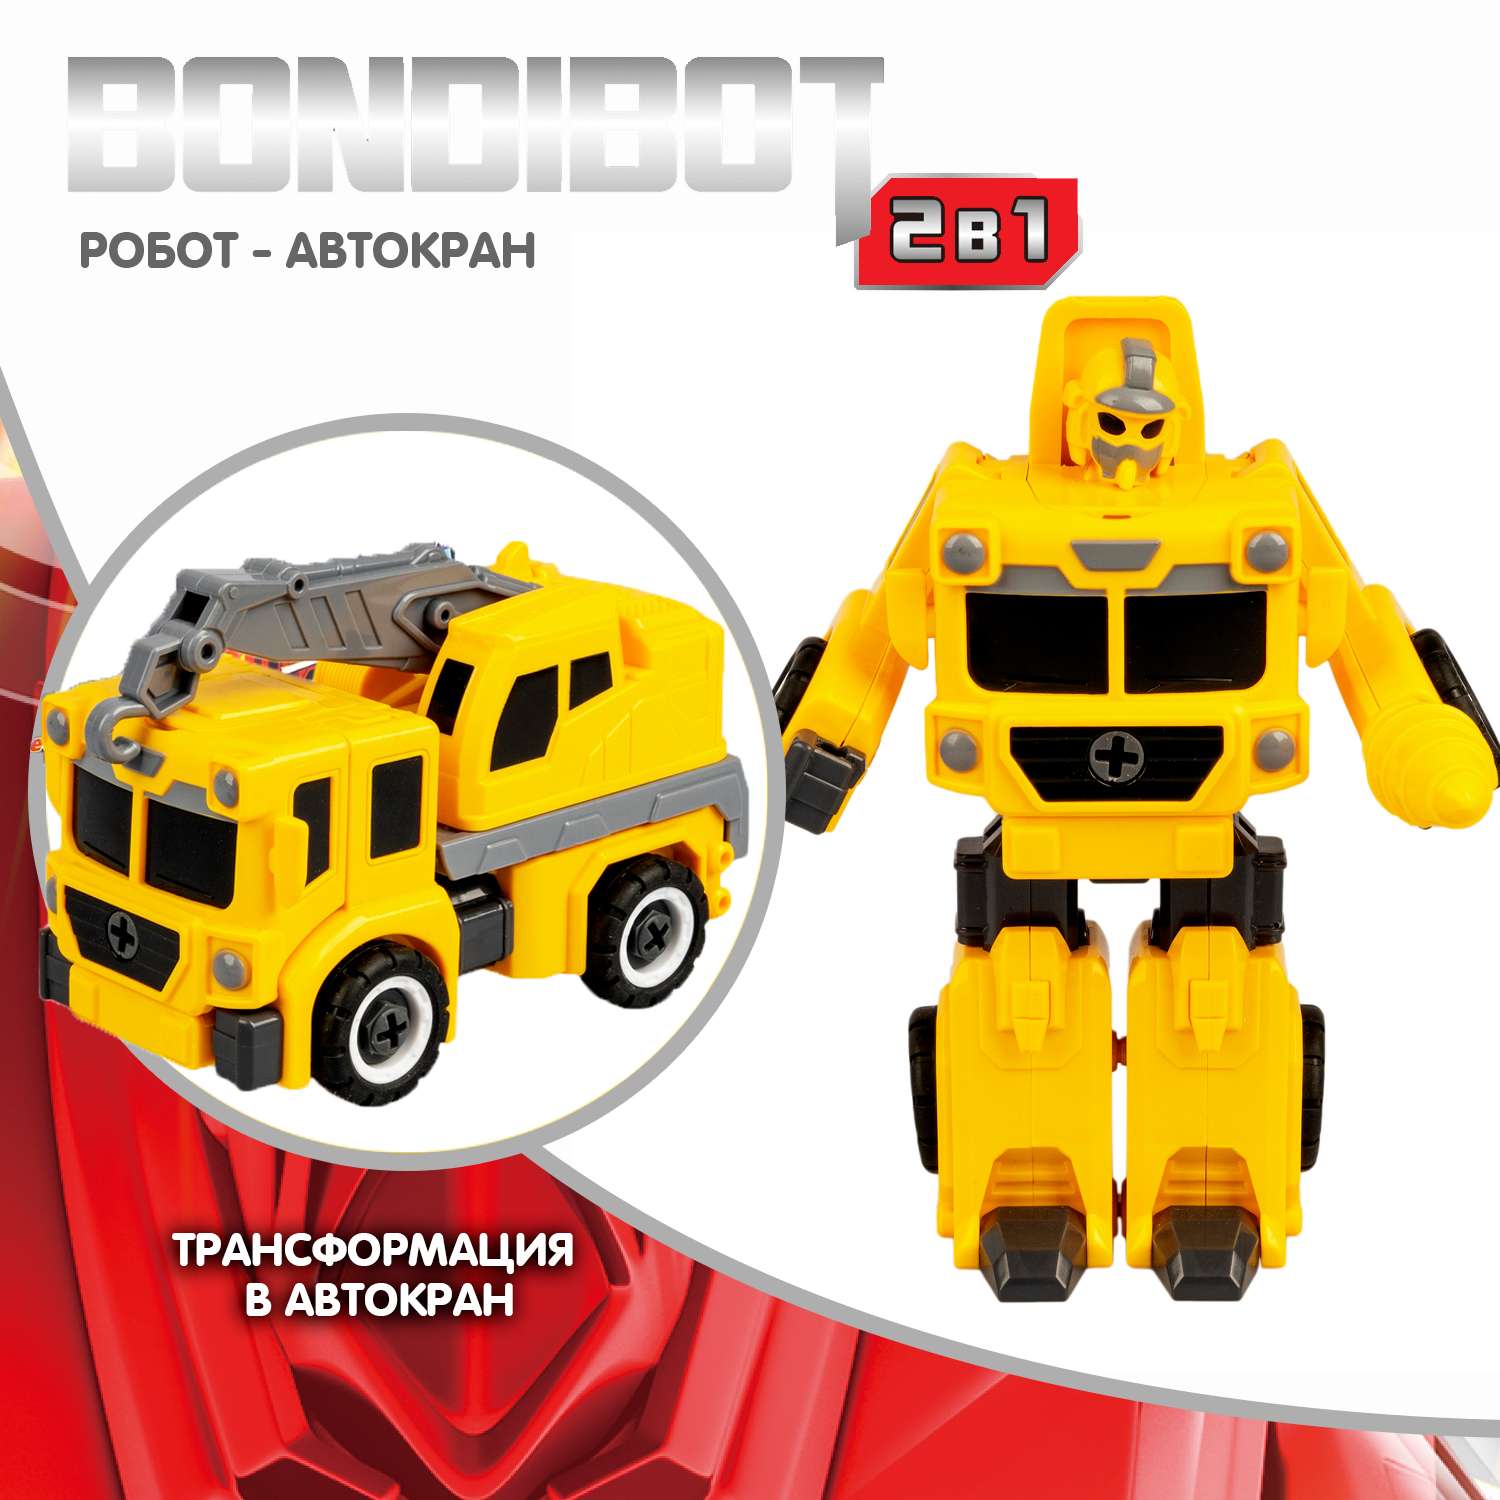 Трансформер-конструктор BONDIBON Bondibot Робот-автокран строительный 2 в 1 с отвёрткой - фото 2